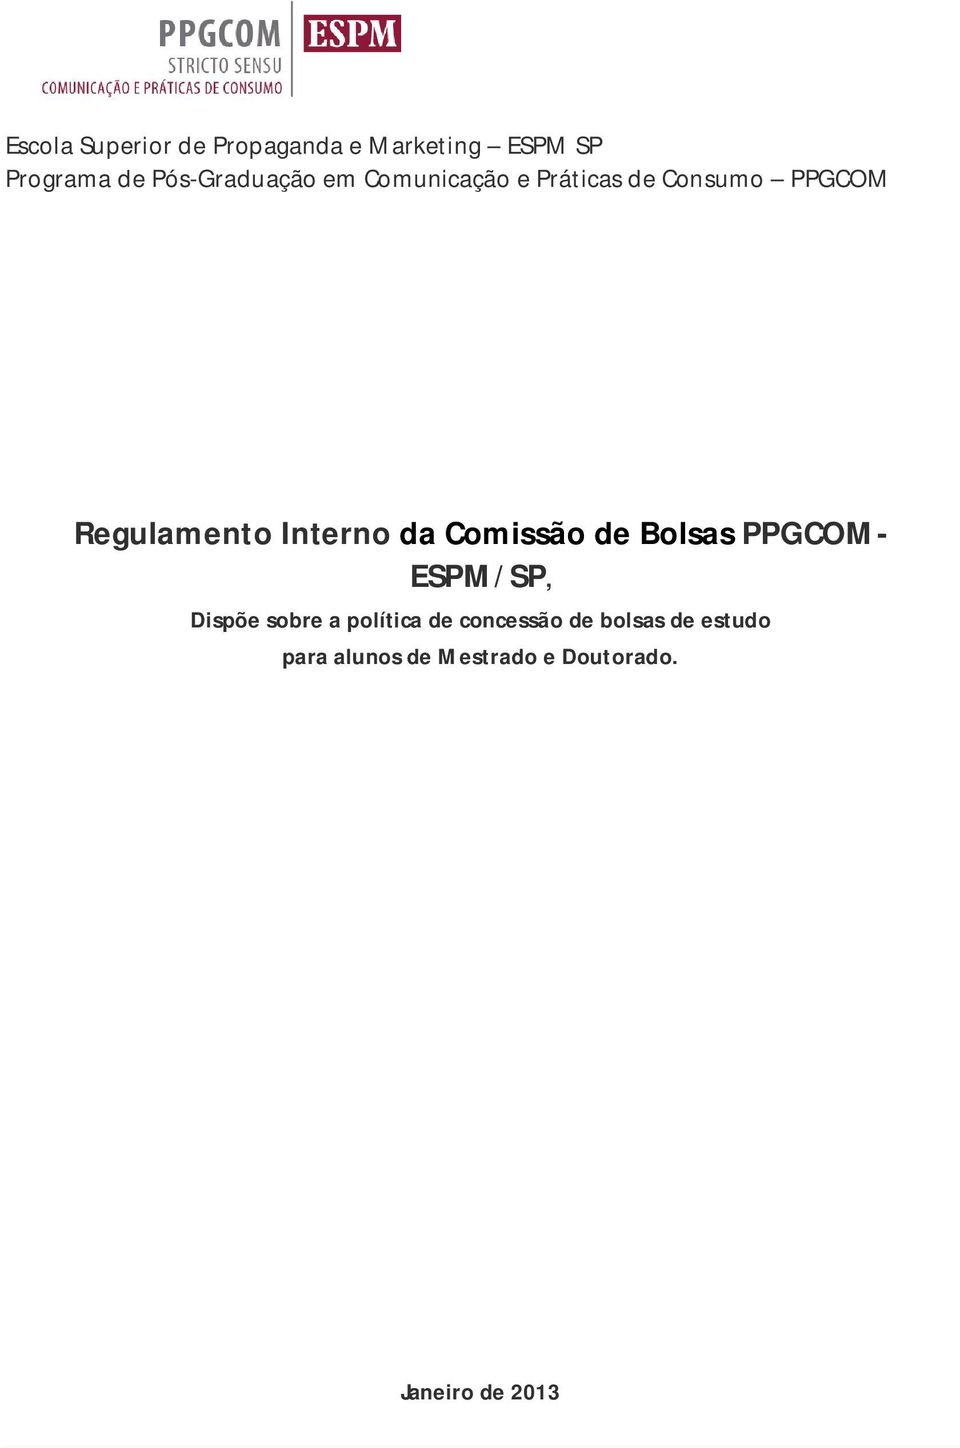 Interno da Comissão de Bolsas PPGCOM- ESPM/SP, Dispõe sobre a política